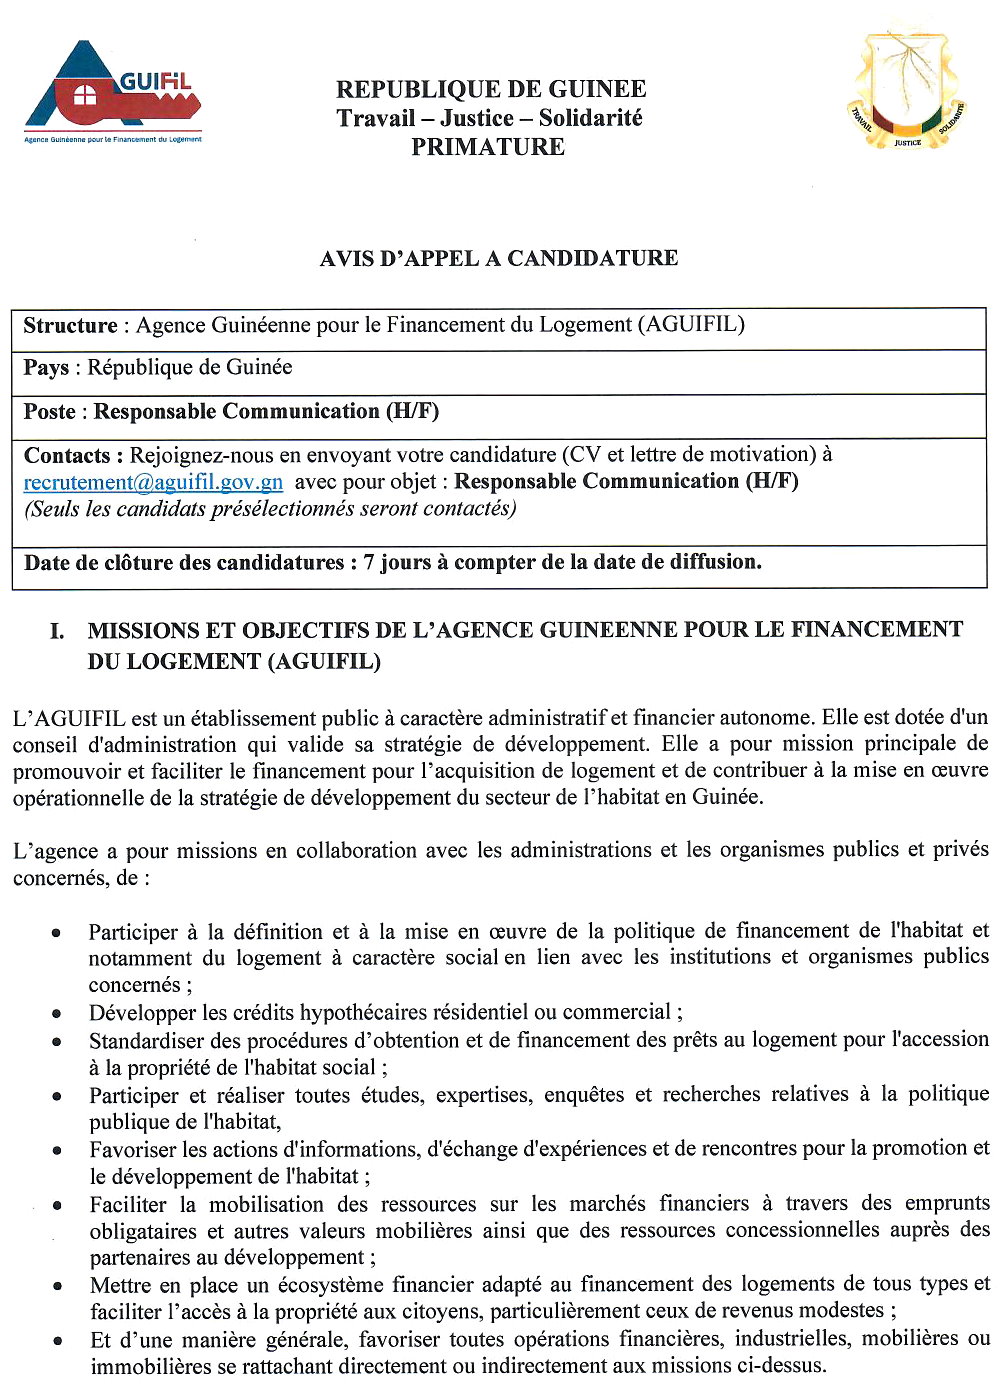 Recrutement en guinée - Aguifil page 1